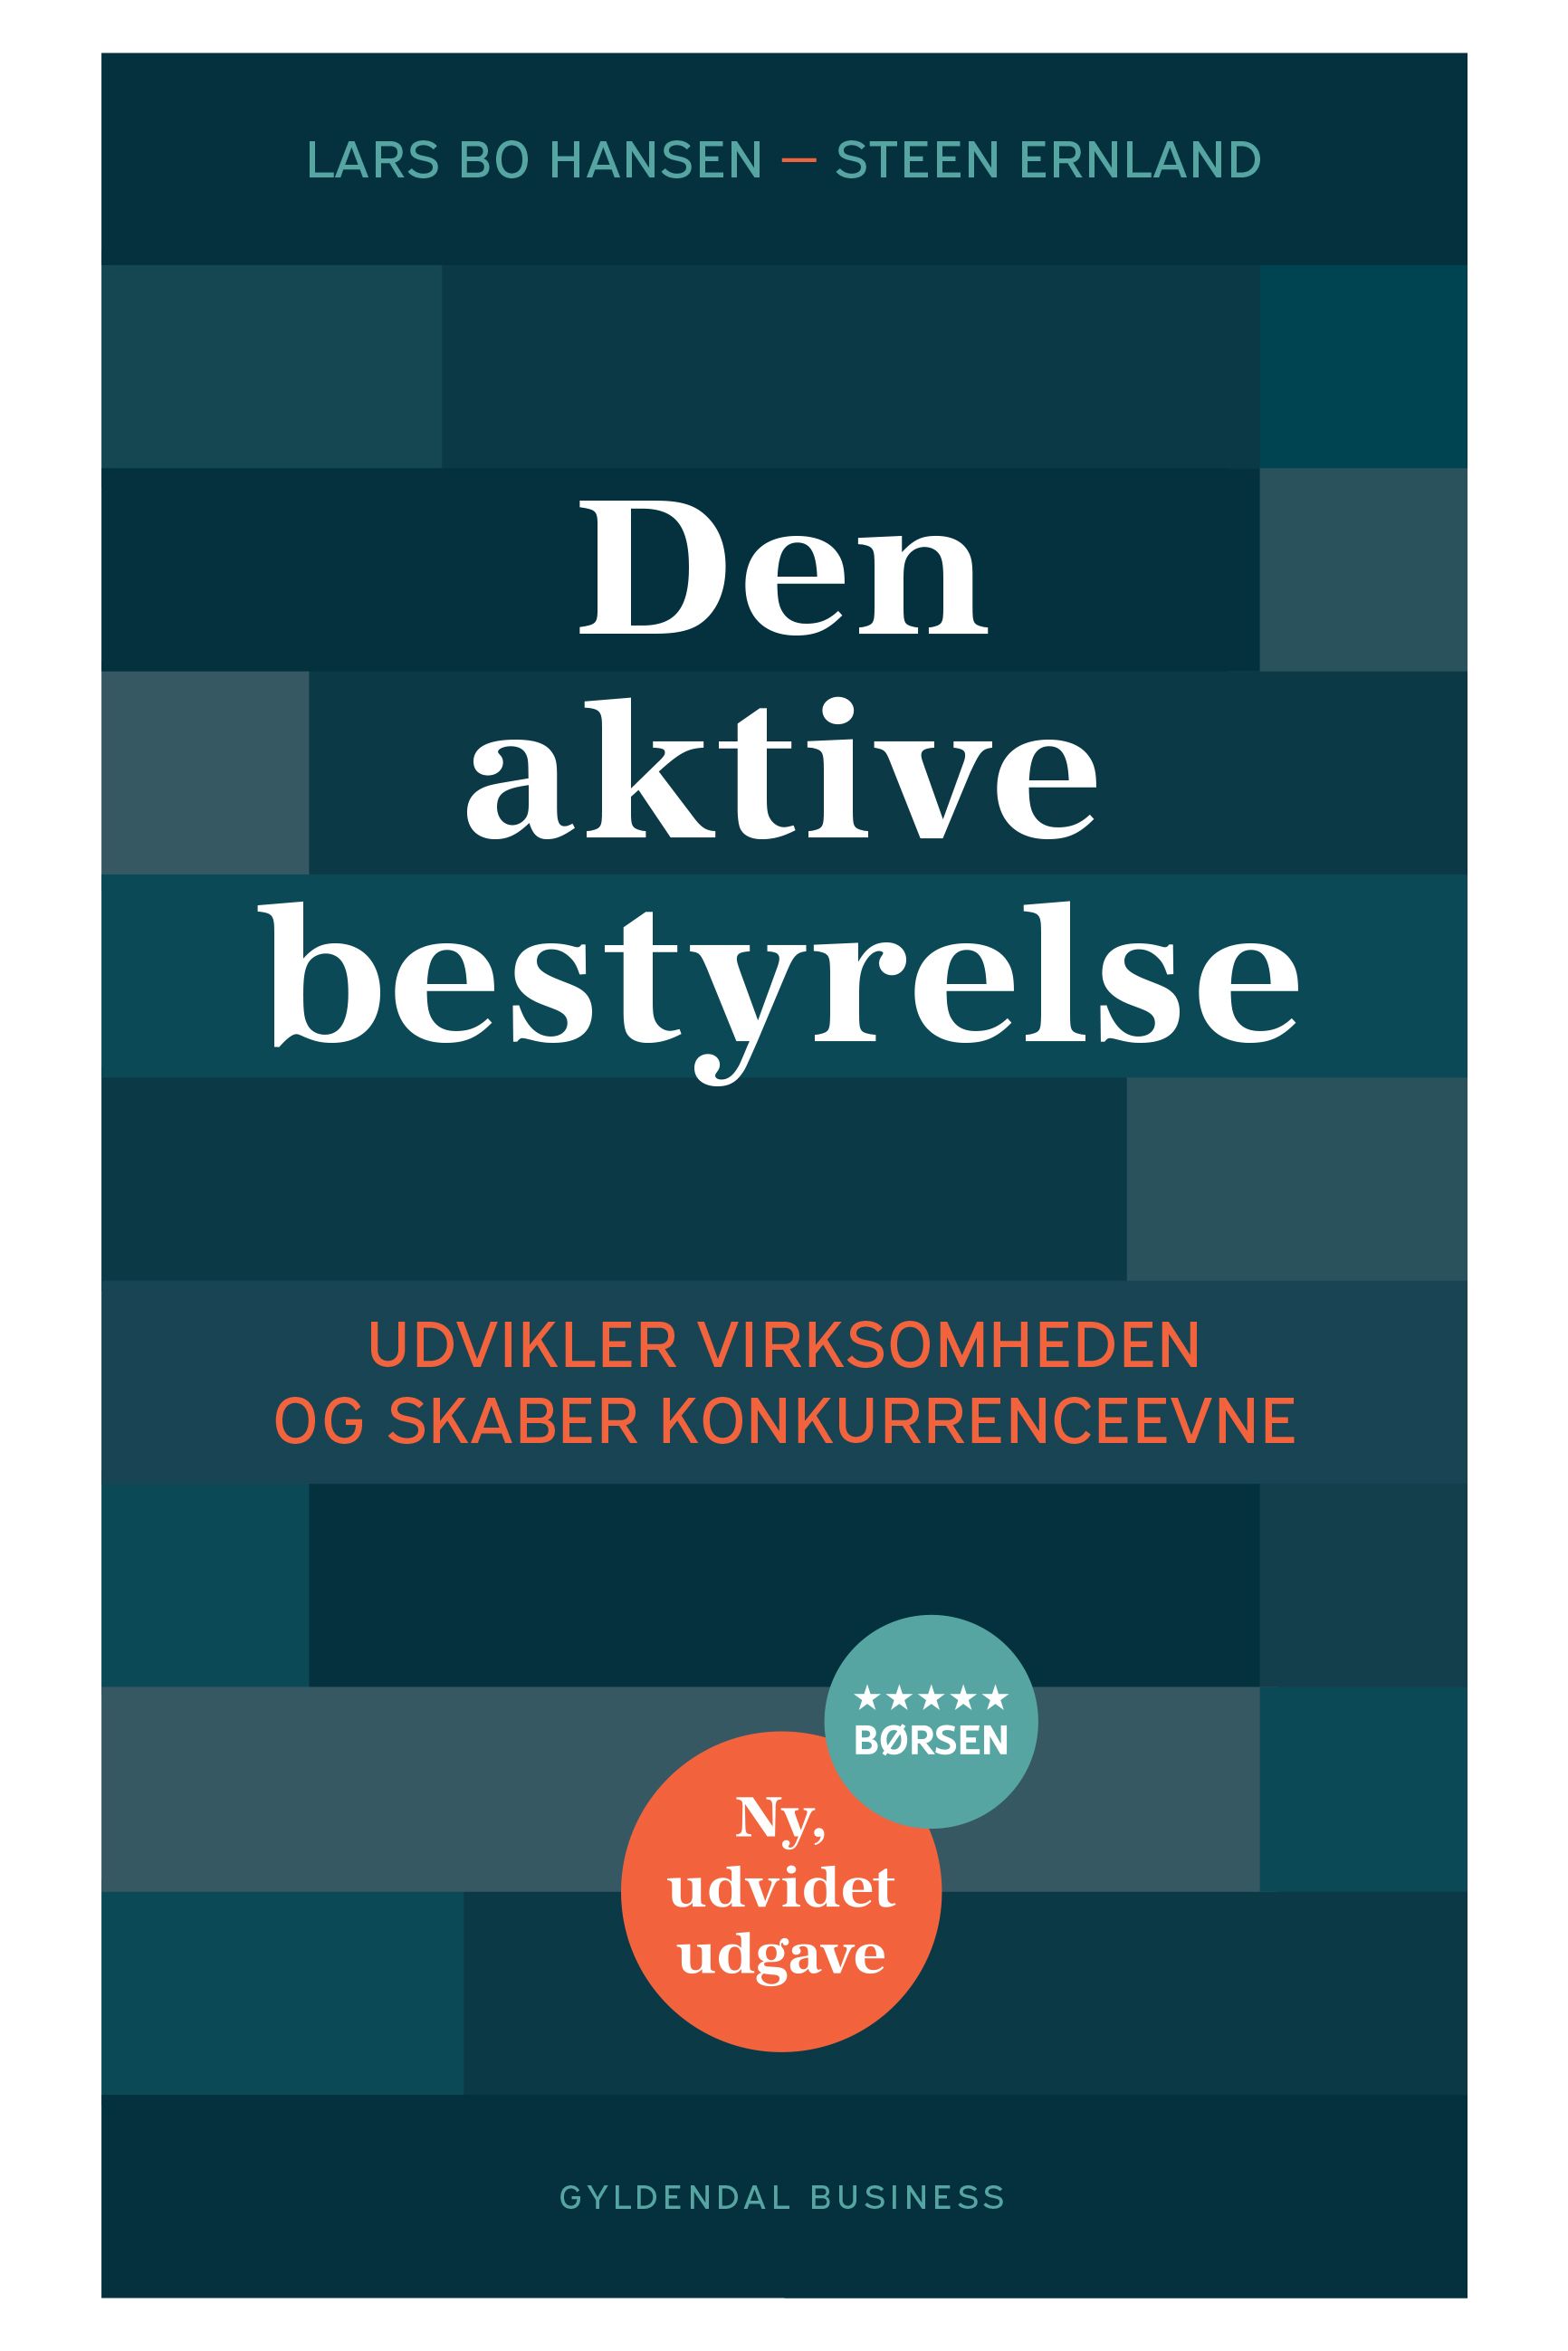 Den aktive bestyrelse, e-bok av Steen Ernland, Lars Bo Hansen